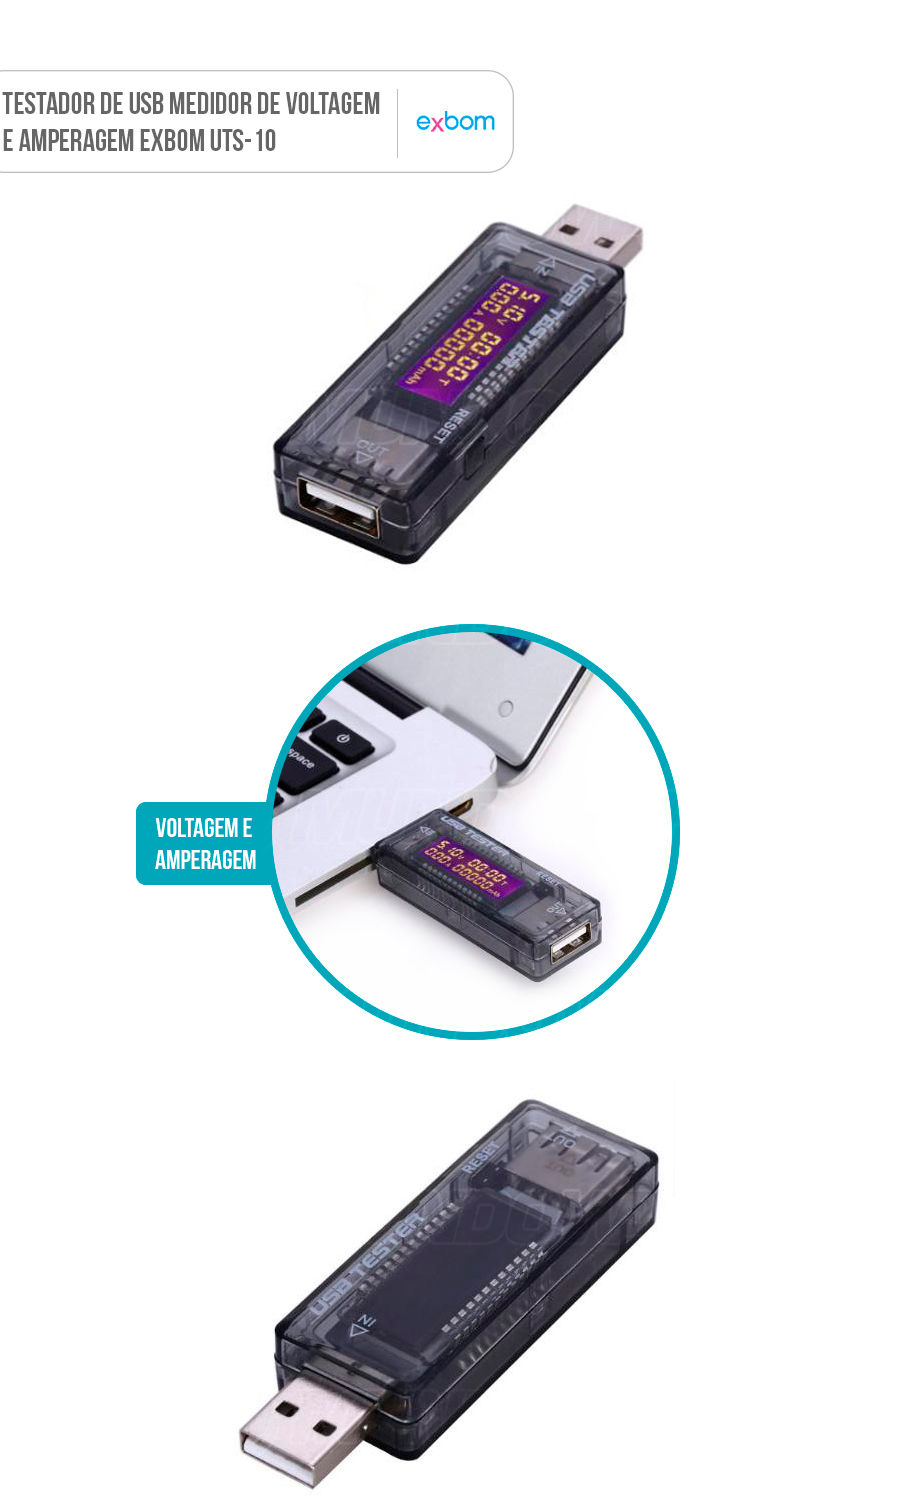 Testador de USB voltagem e amperagem potência